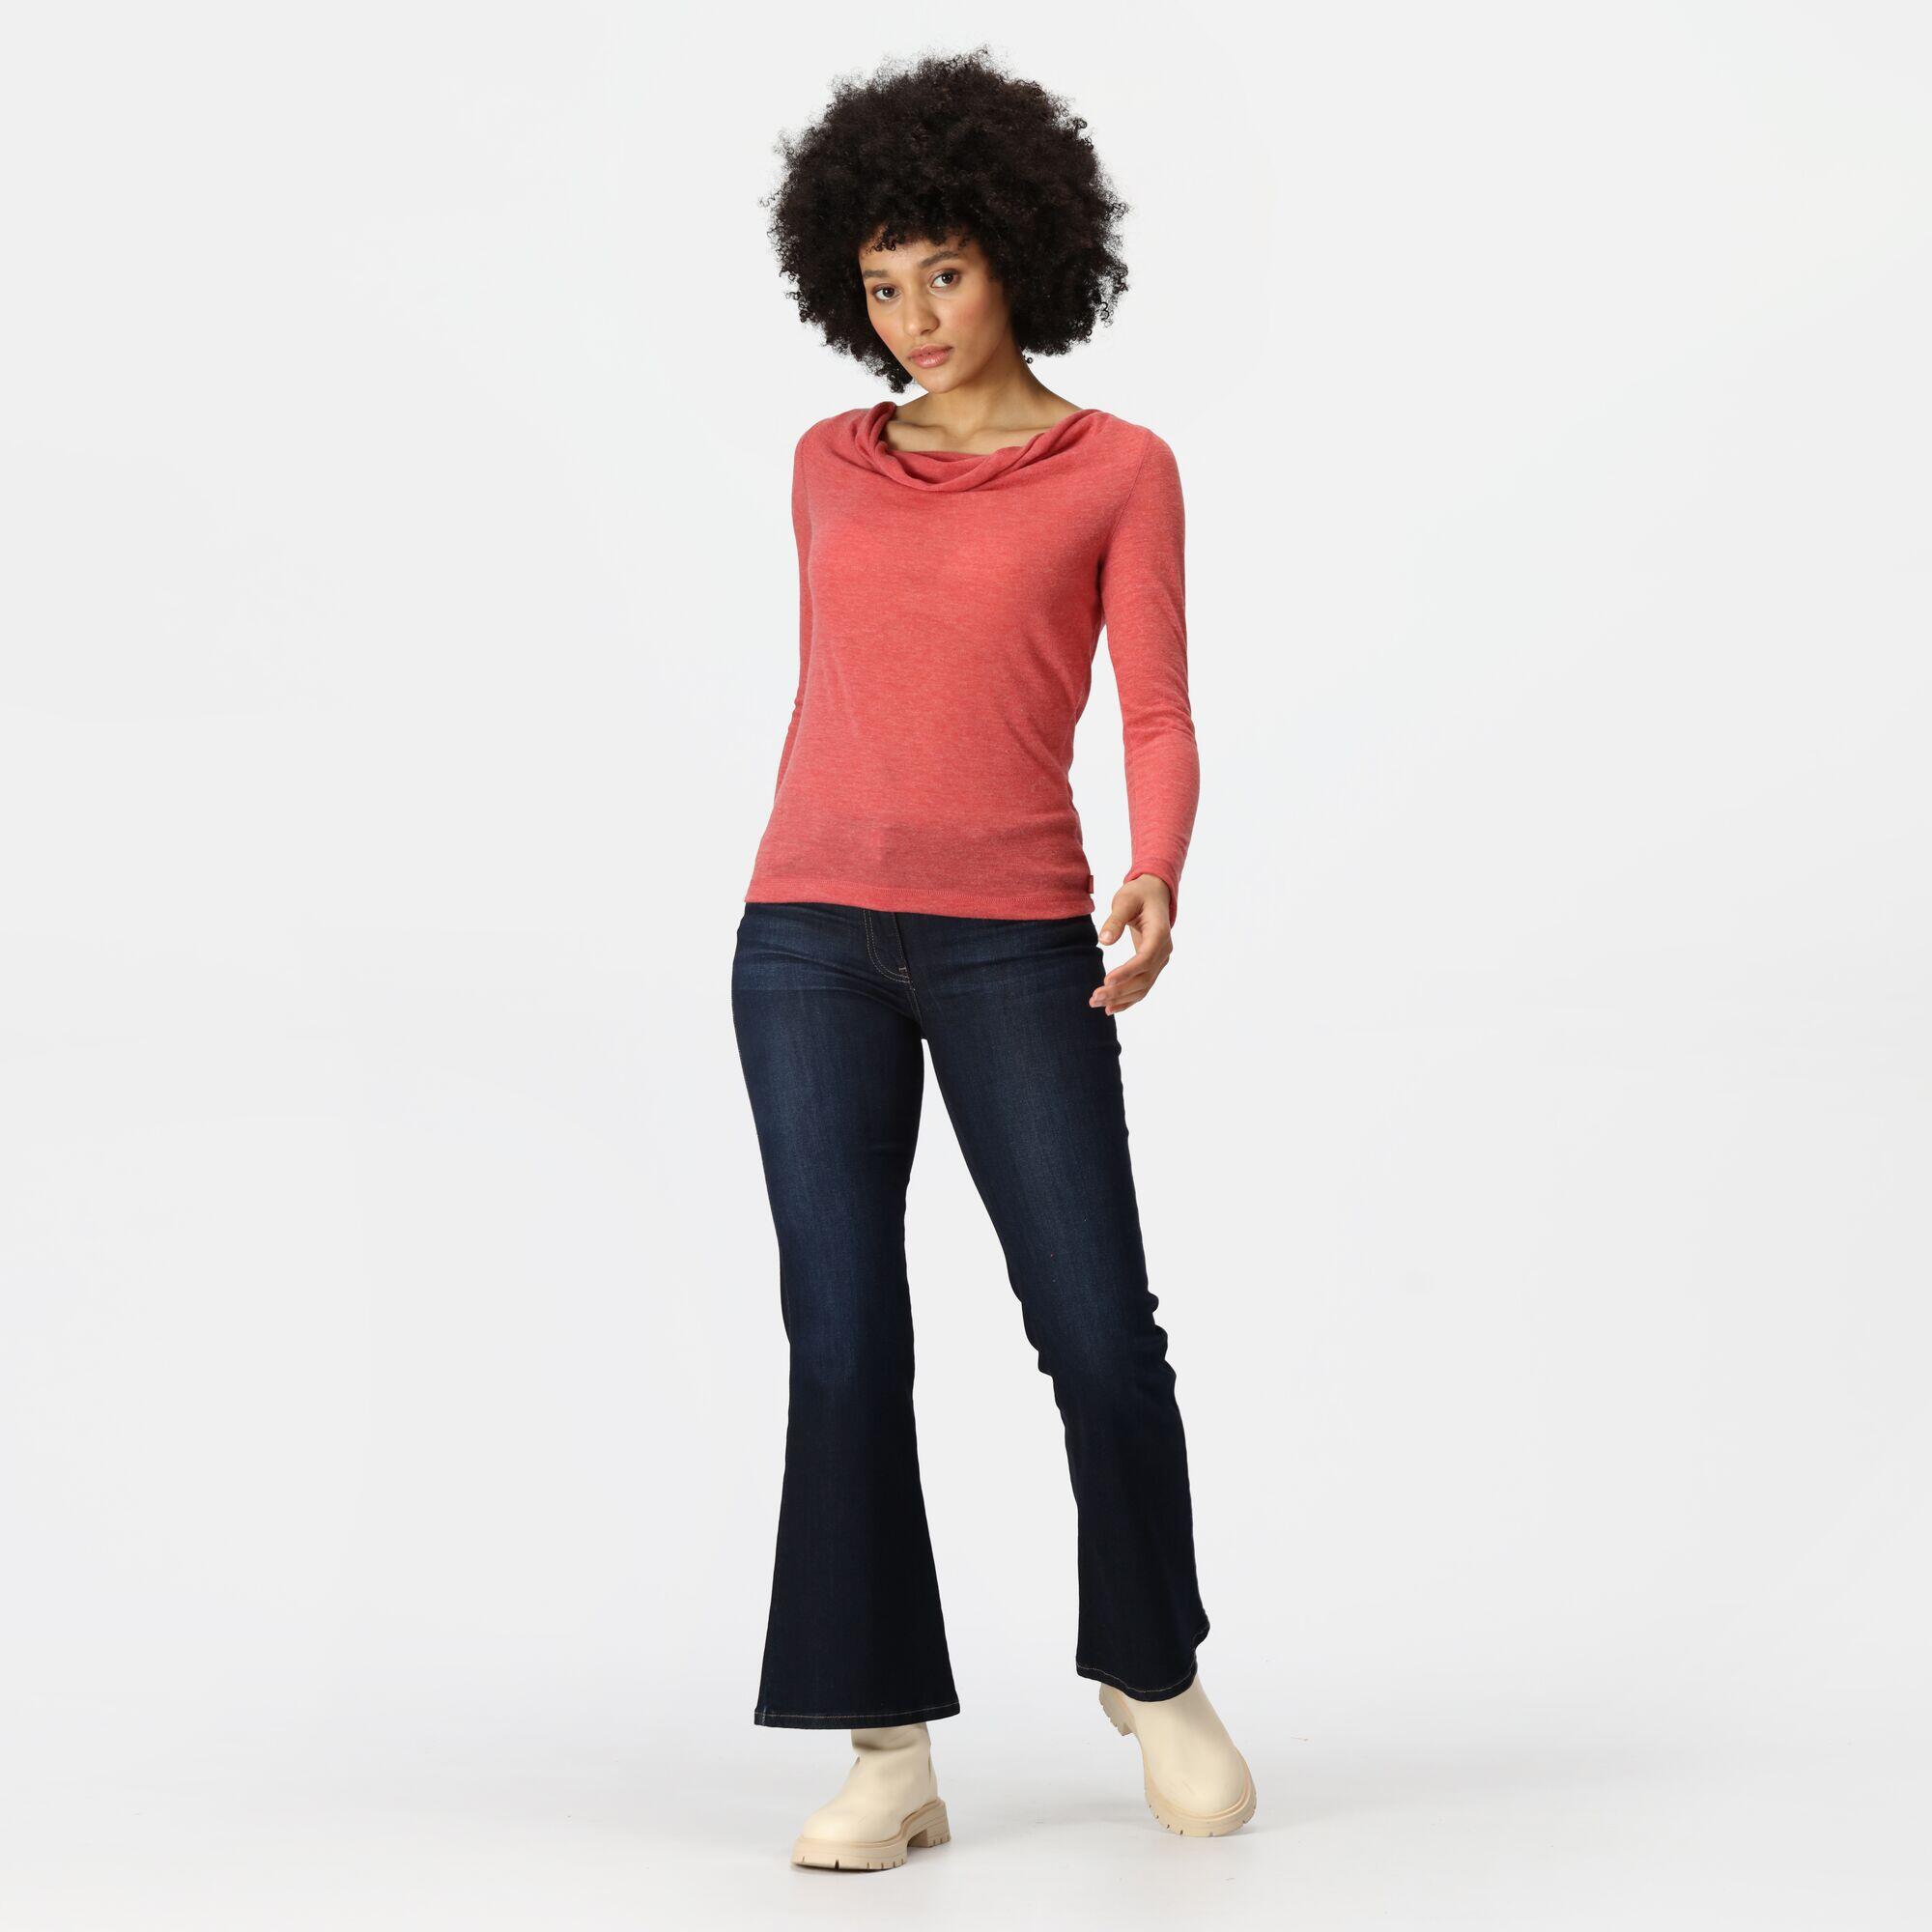 Frayda Women's Walking Long-Sleeve T-Shirt 3/5